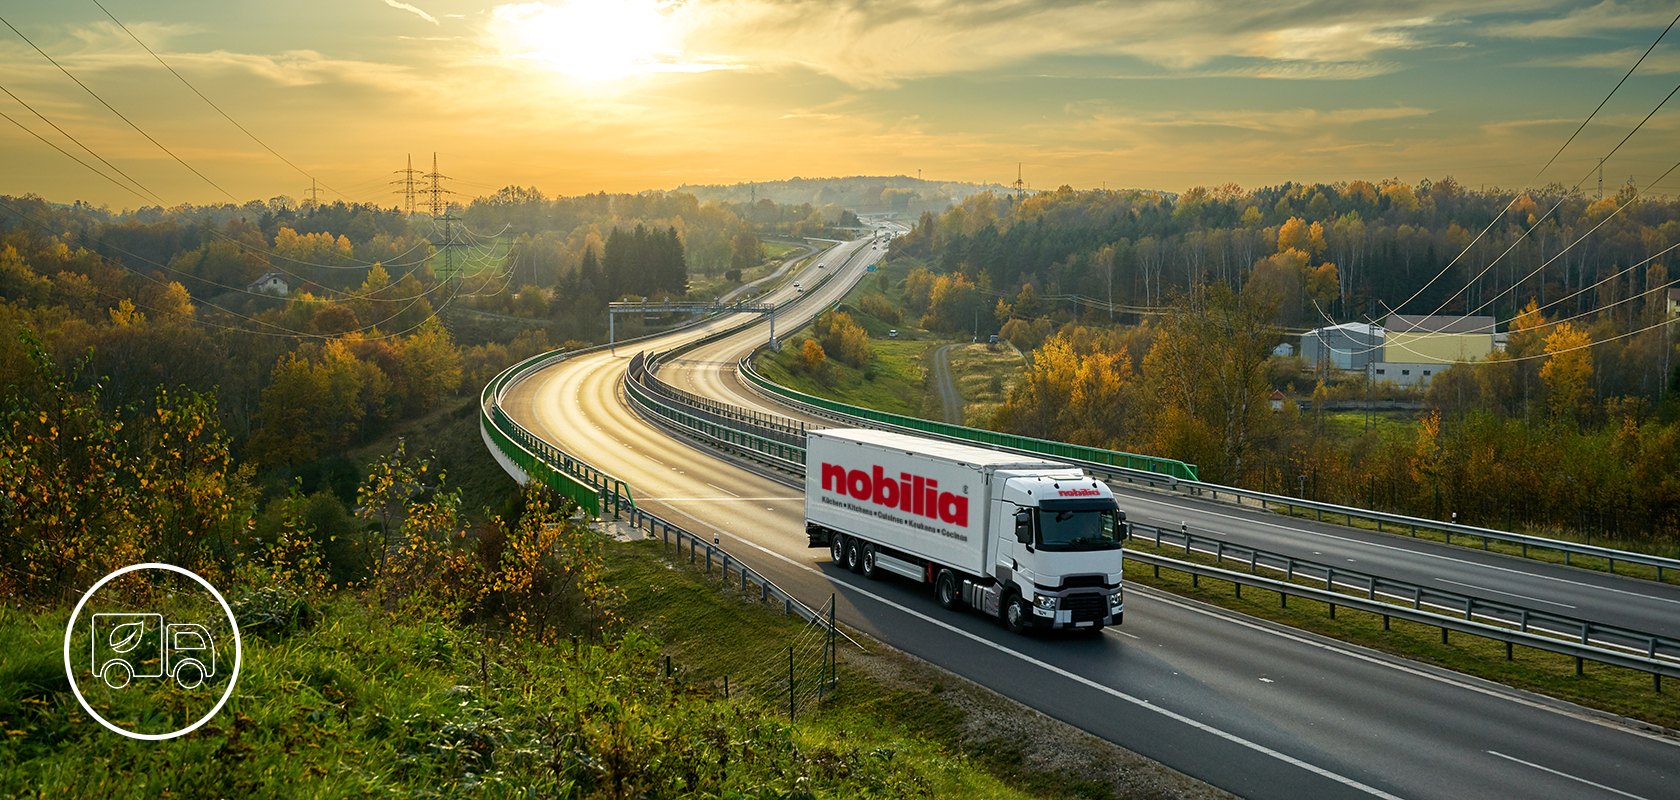 Un camion commerciale della marca "nobilia" viaggia su un'autostrada curva in mezzo a un paesaggio autunnale vibrante con fogliame e colline lontane che si susseguono.